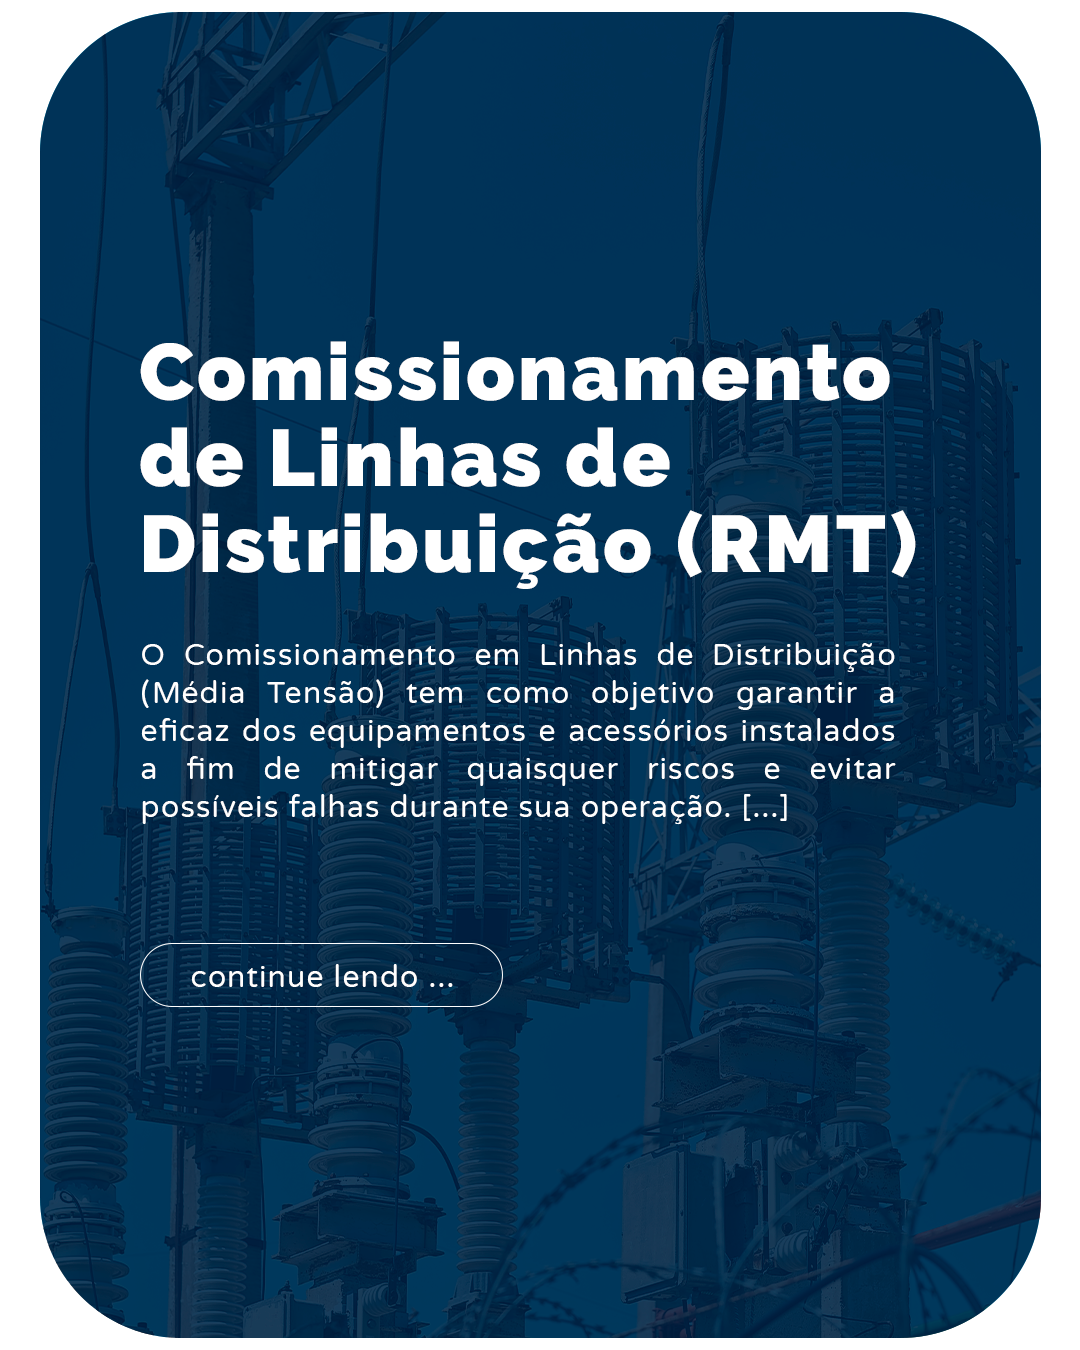 comissionamento de linhas de distribuição (rmt)